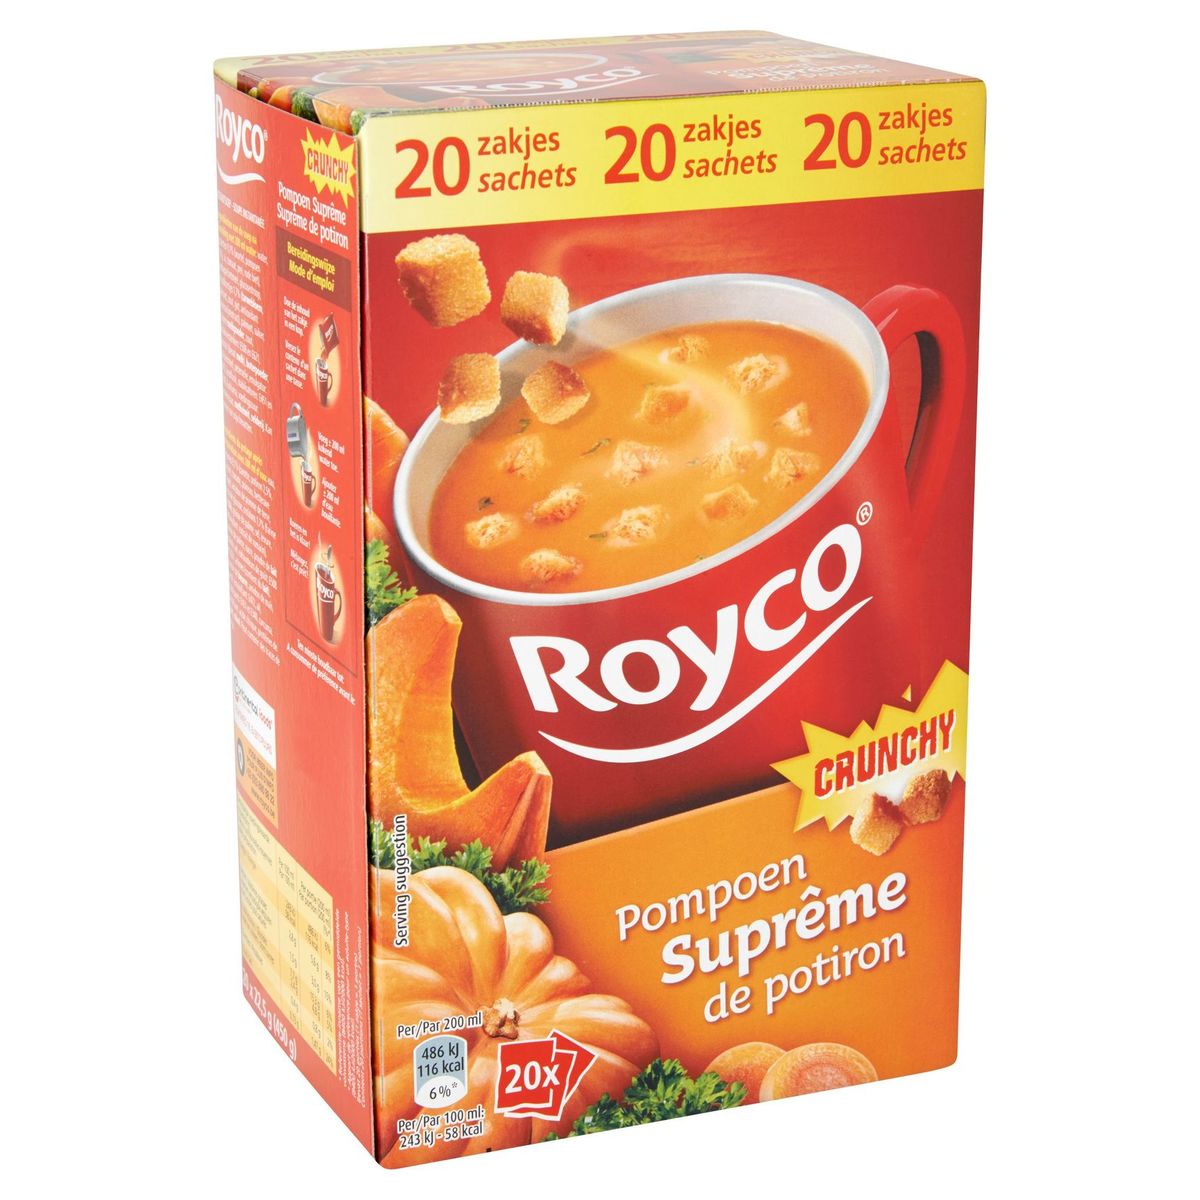 Royco Crunchy Suprême de Potiron 20 x 22.5 g